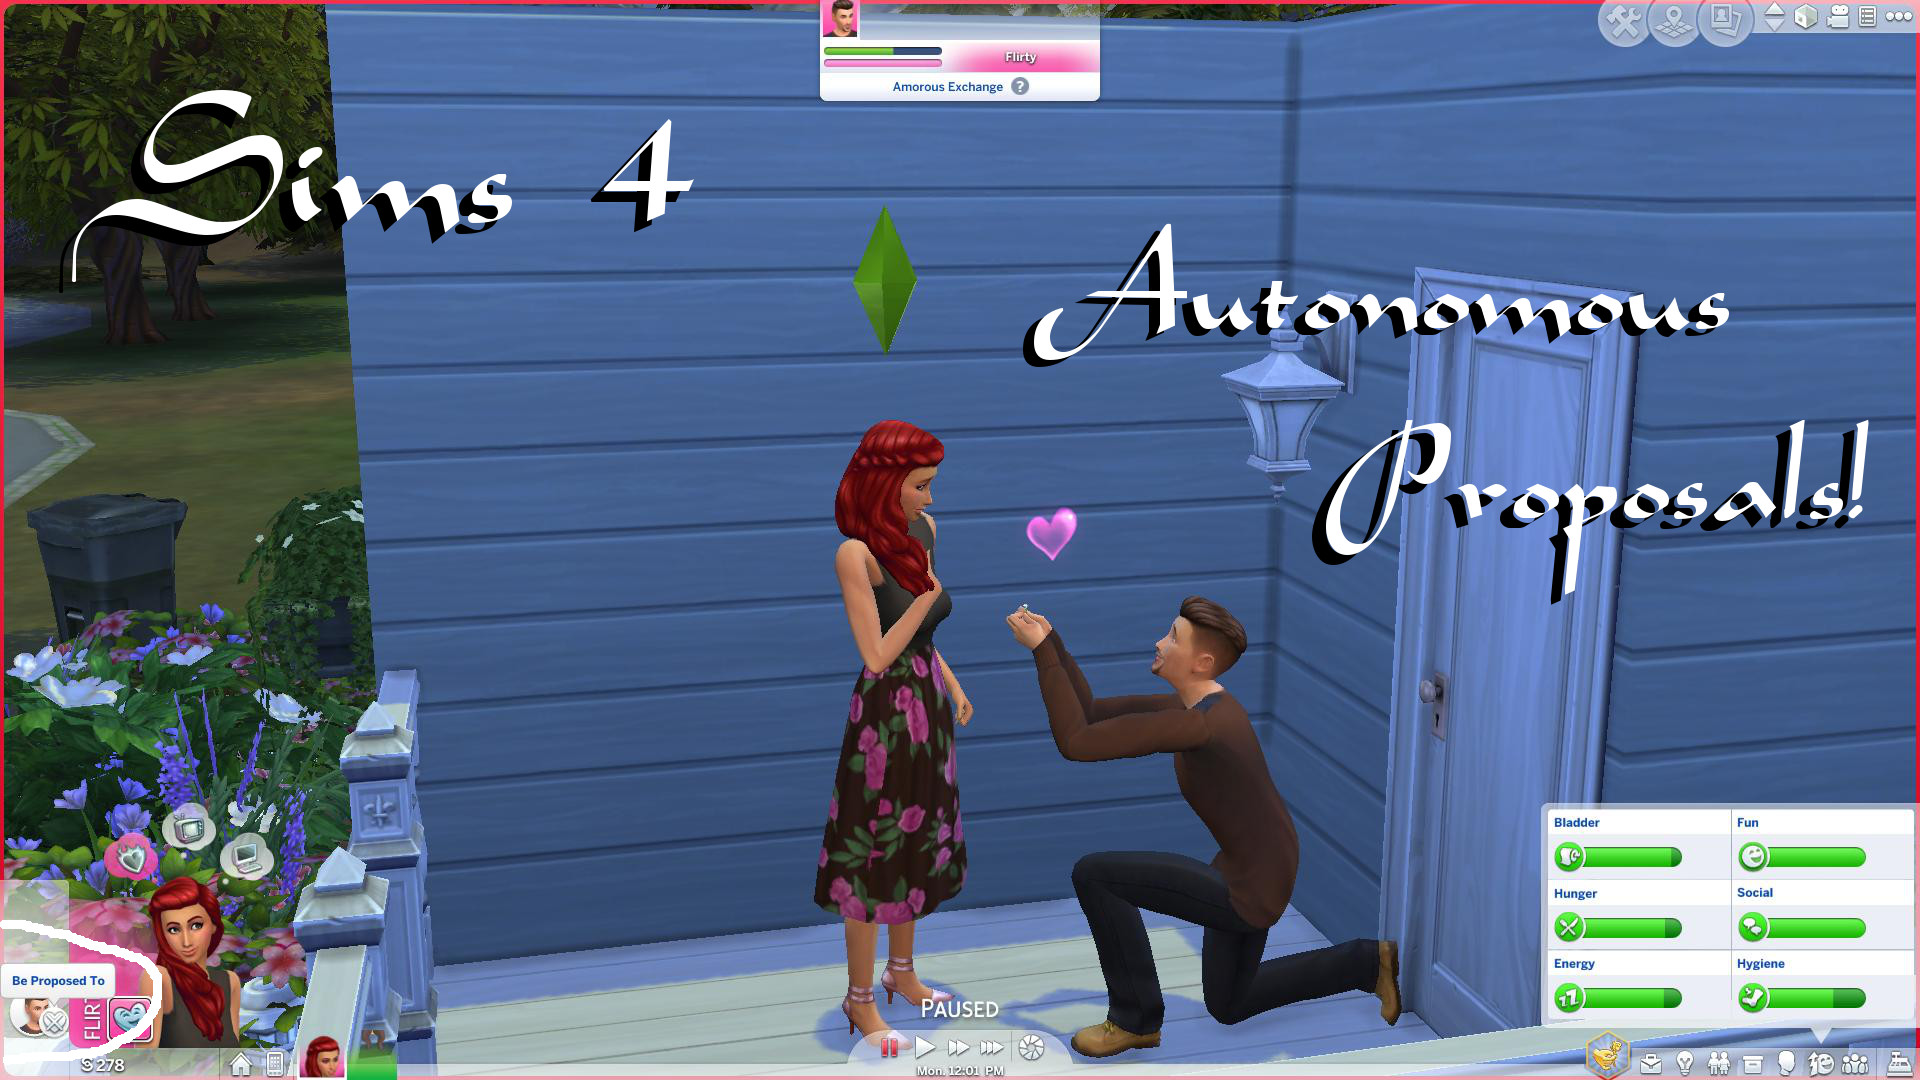 Mod The Sims - Autonomous Proposals!